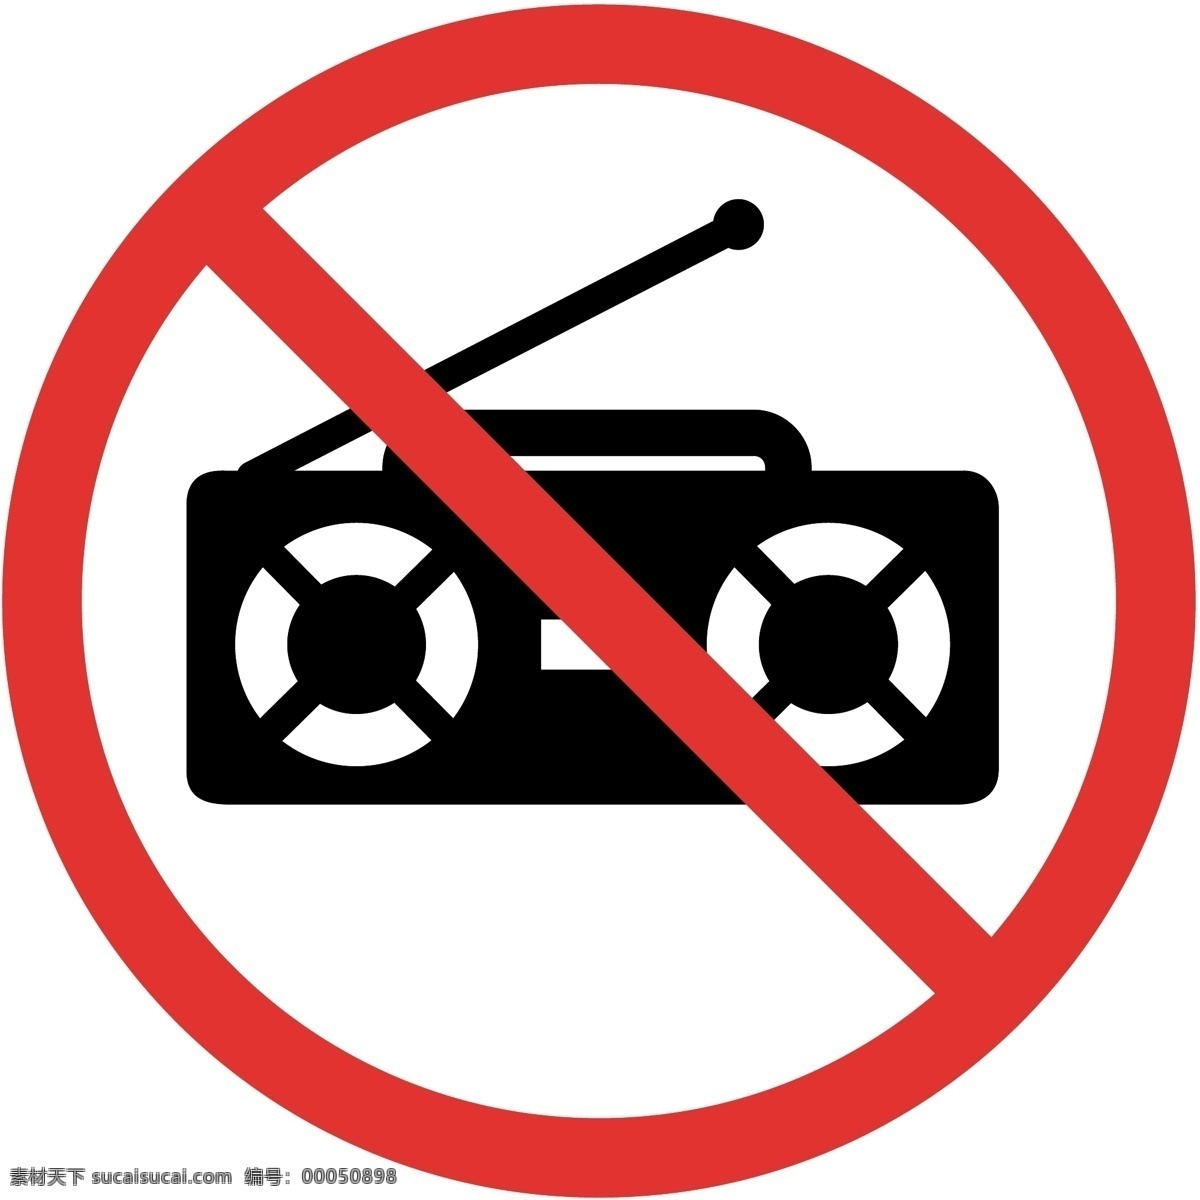 禁止噪音 禁止外放 禁止大声 禁止功放 禁止电子用品 禁止收录 标志图标 公共标识标志